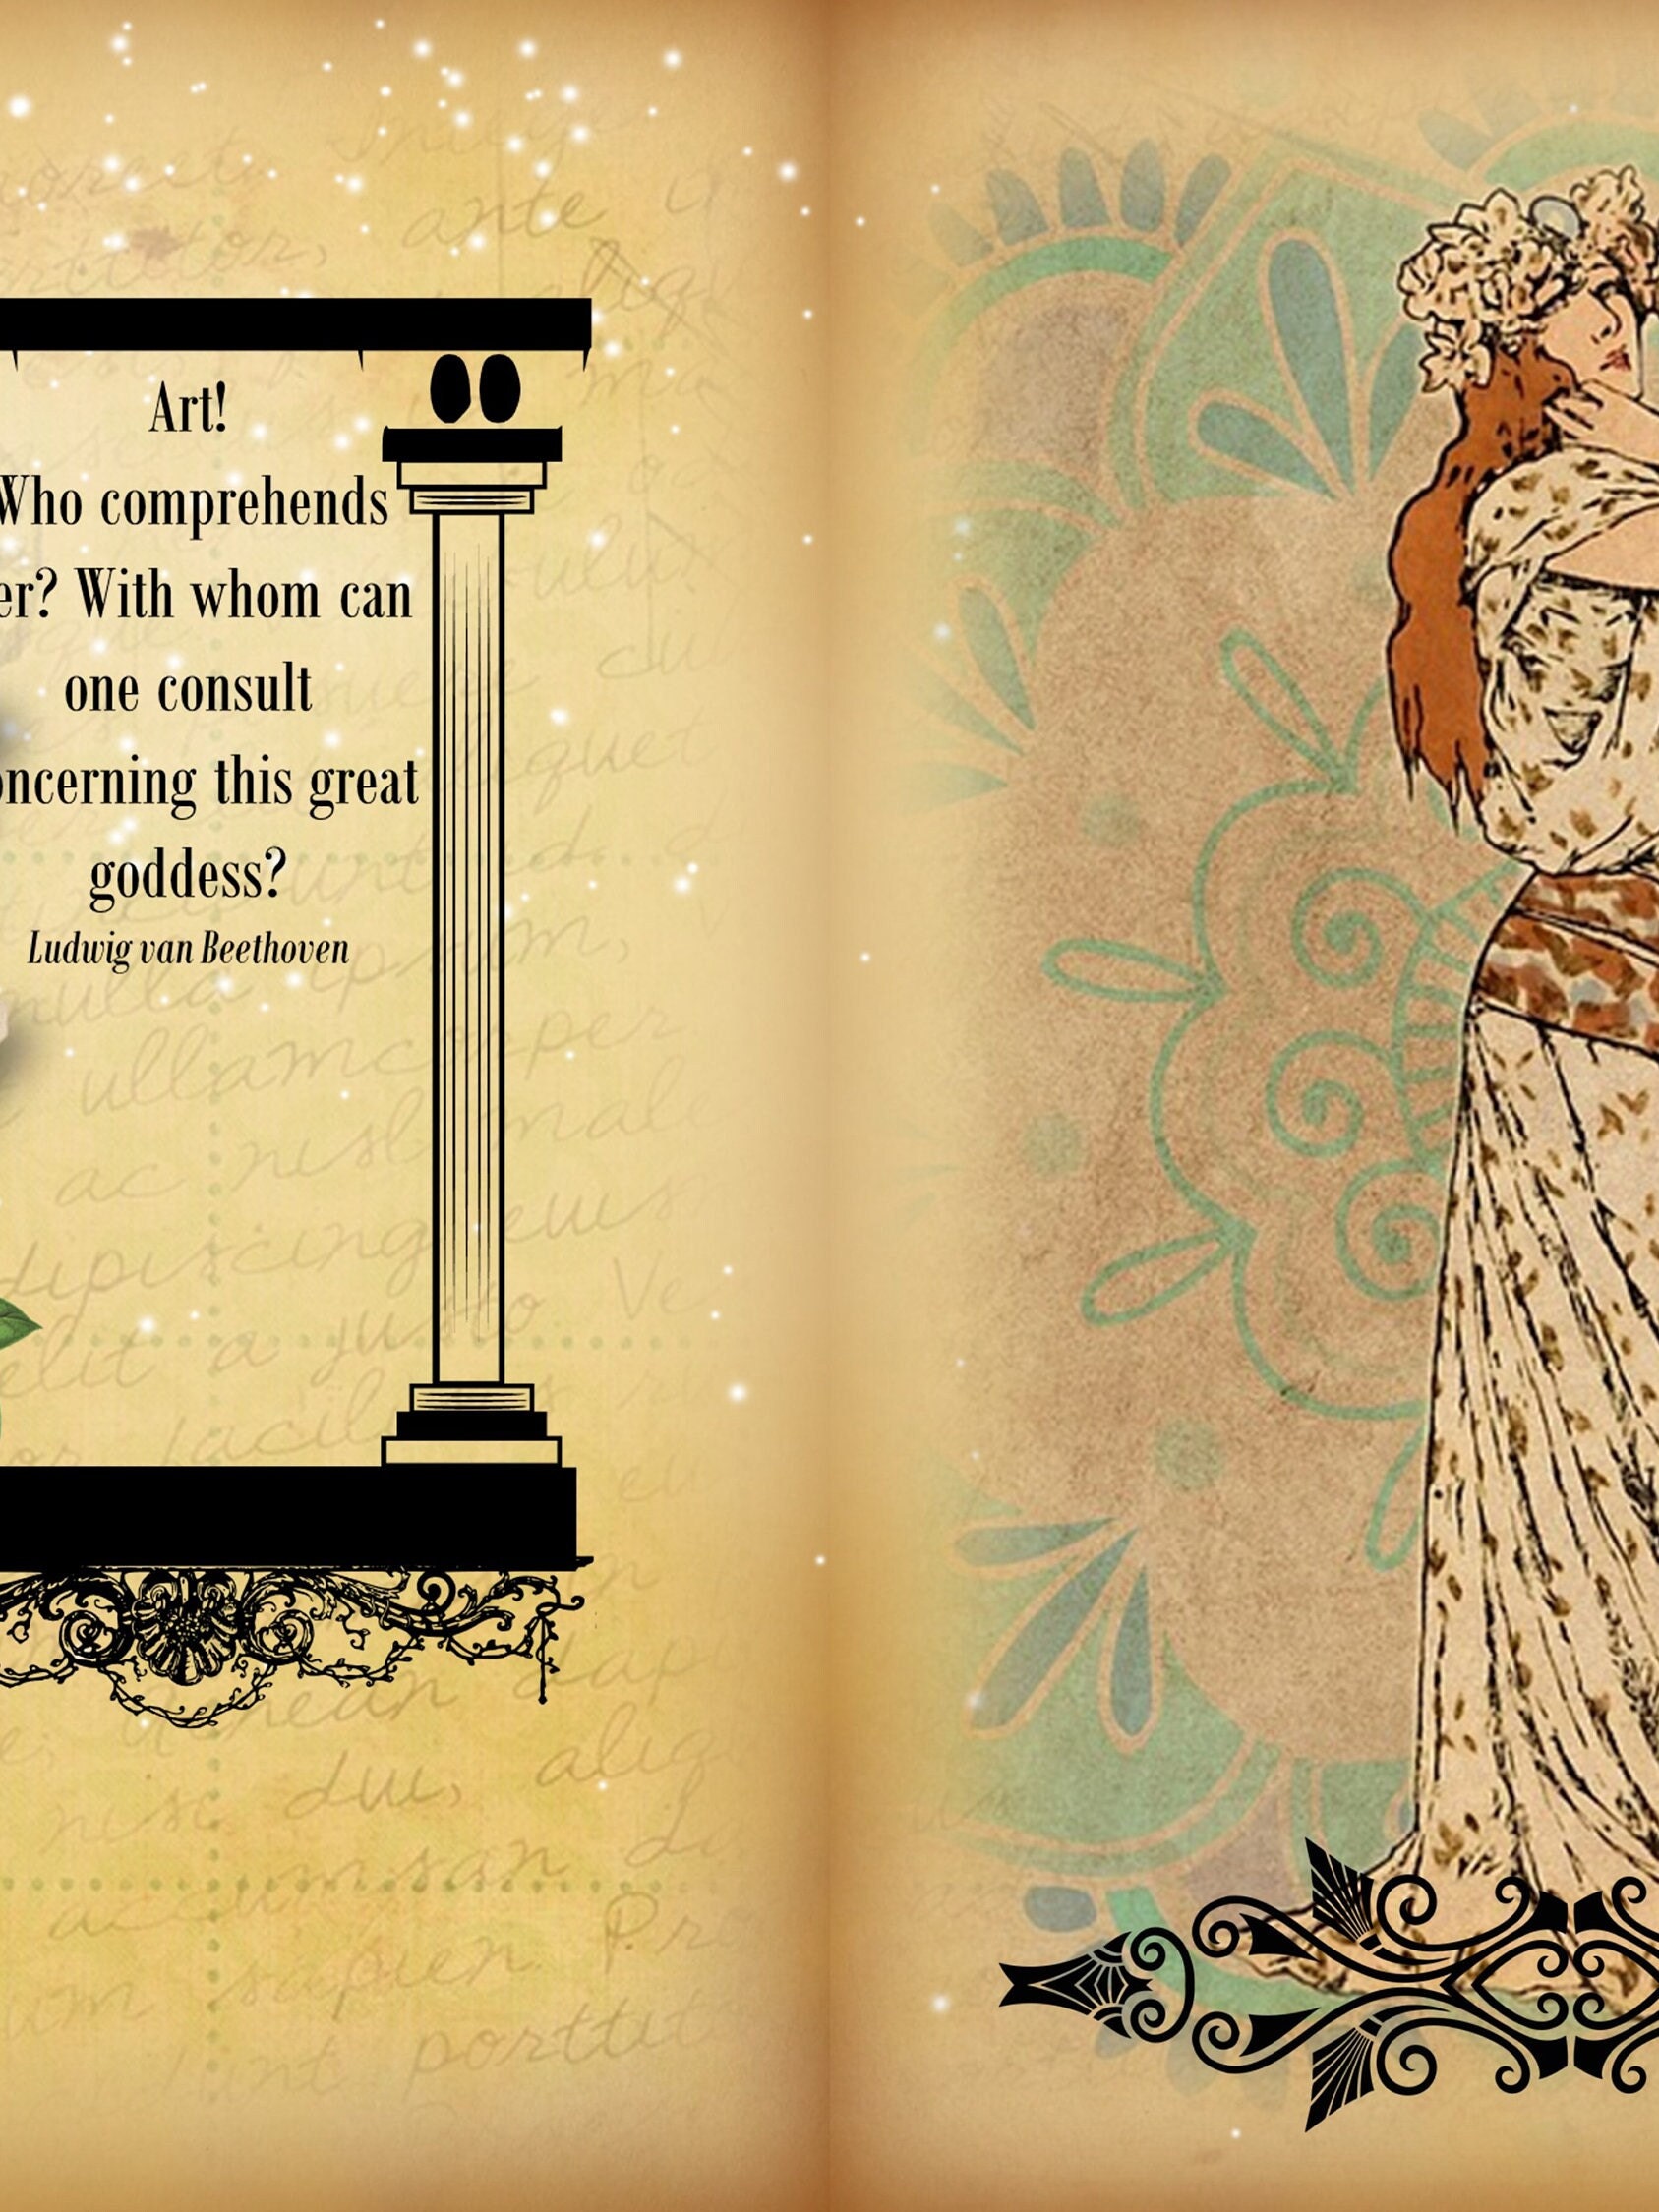 Goddess Scrapbook Junk Journal Kit Graphic by Secret Helper